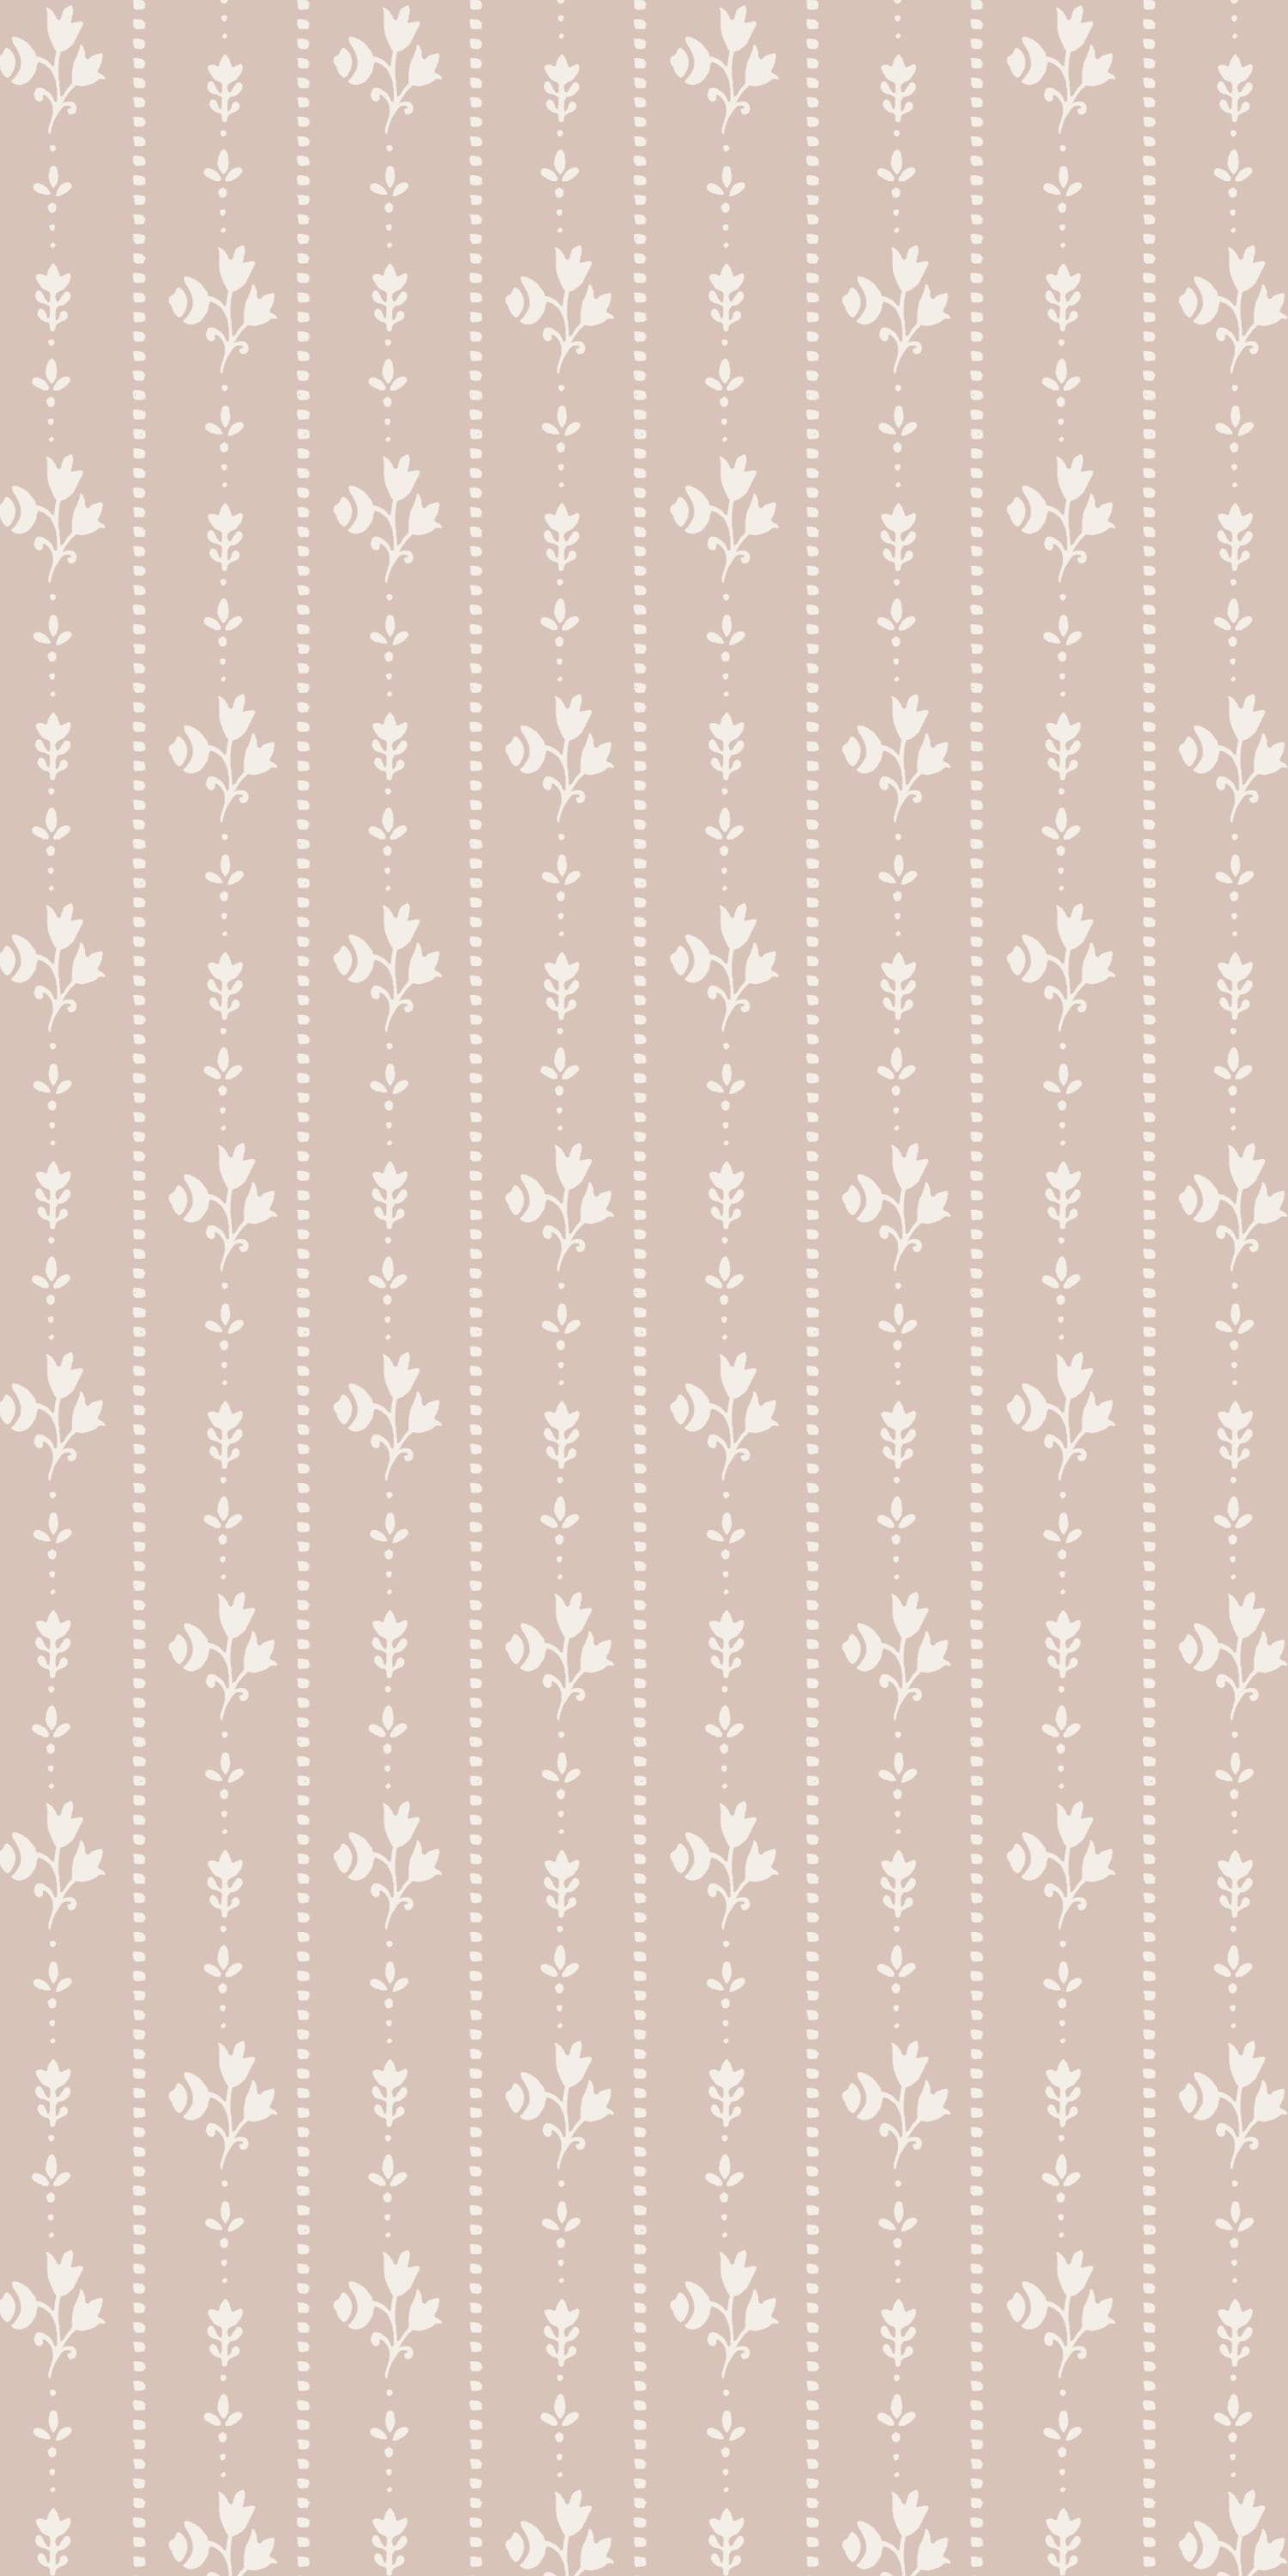 York Wallcoverings Girl Power 2 Floral Stripe 8 x 10 Wallpaper Memo Sample  Pink BackgroundPlumLime Green  Amazonin Home Improvement